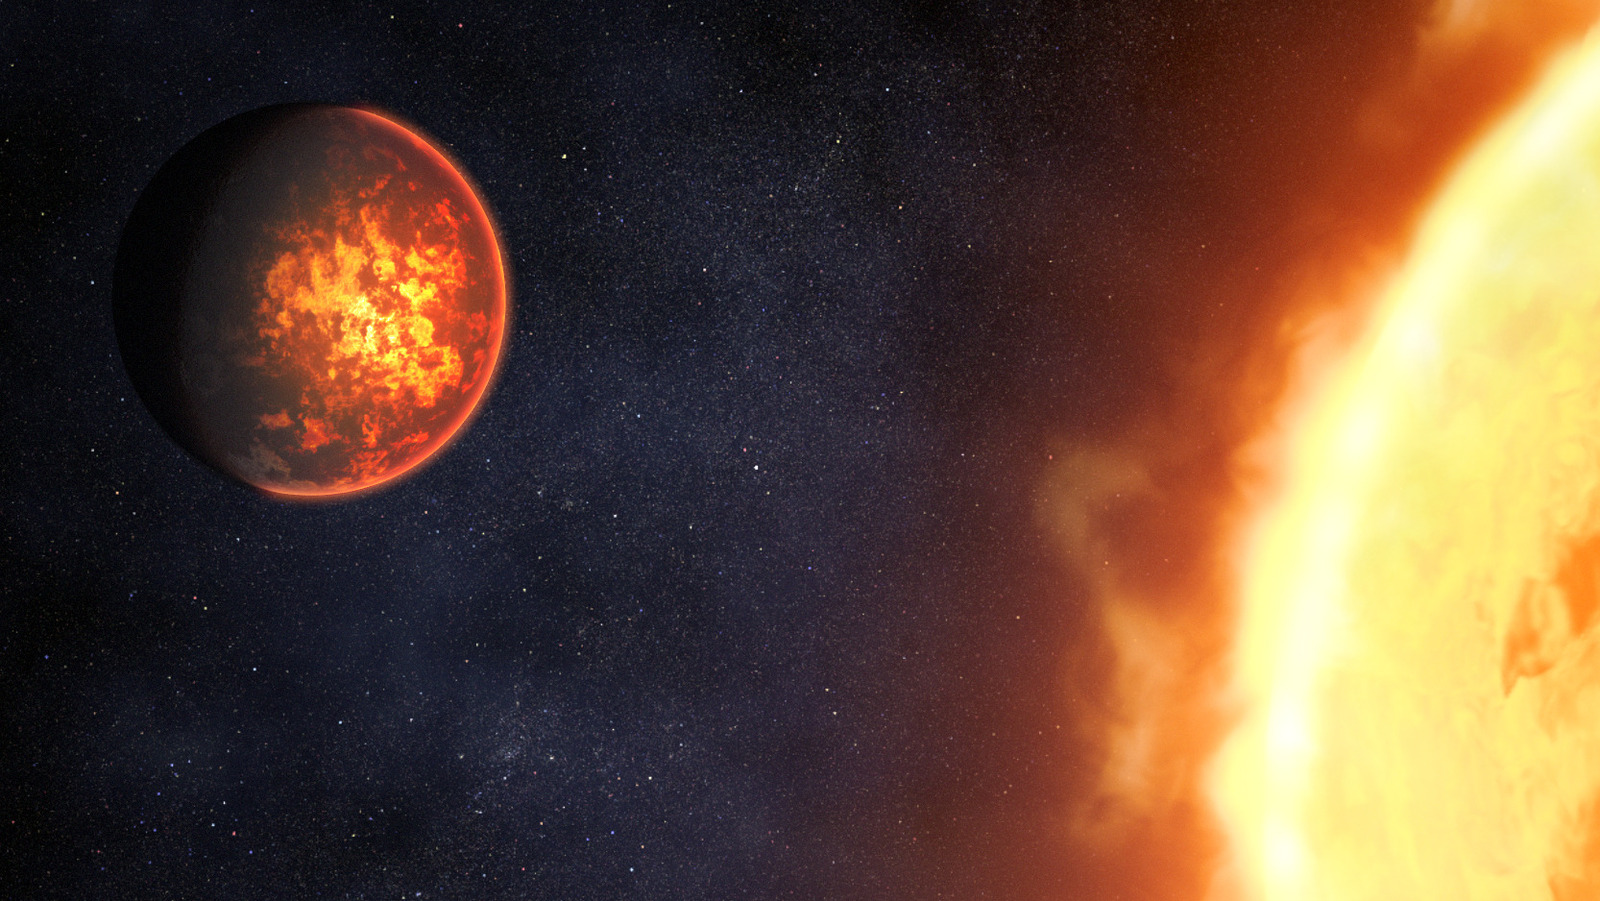 Come il James Webb Telescope studierà la gigantesca Terra ricoperta di lava